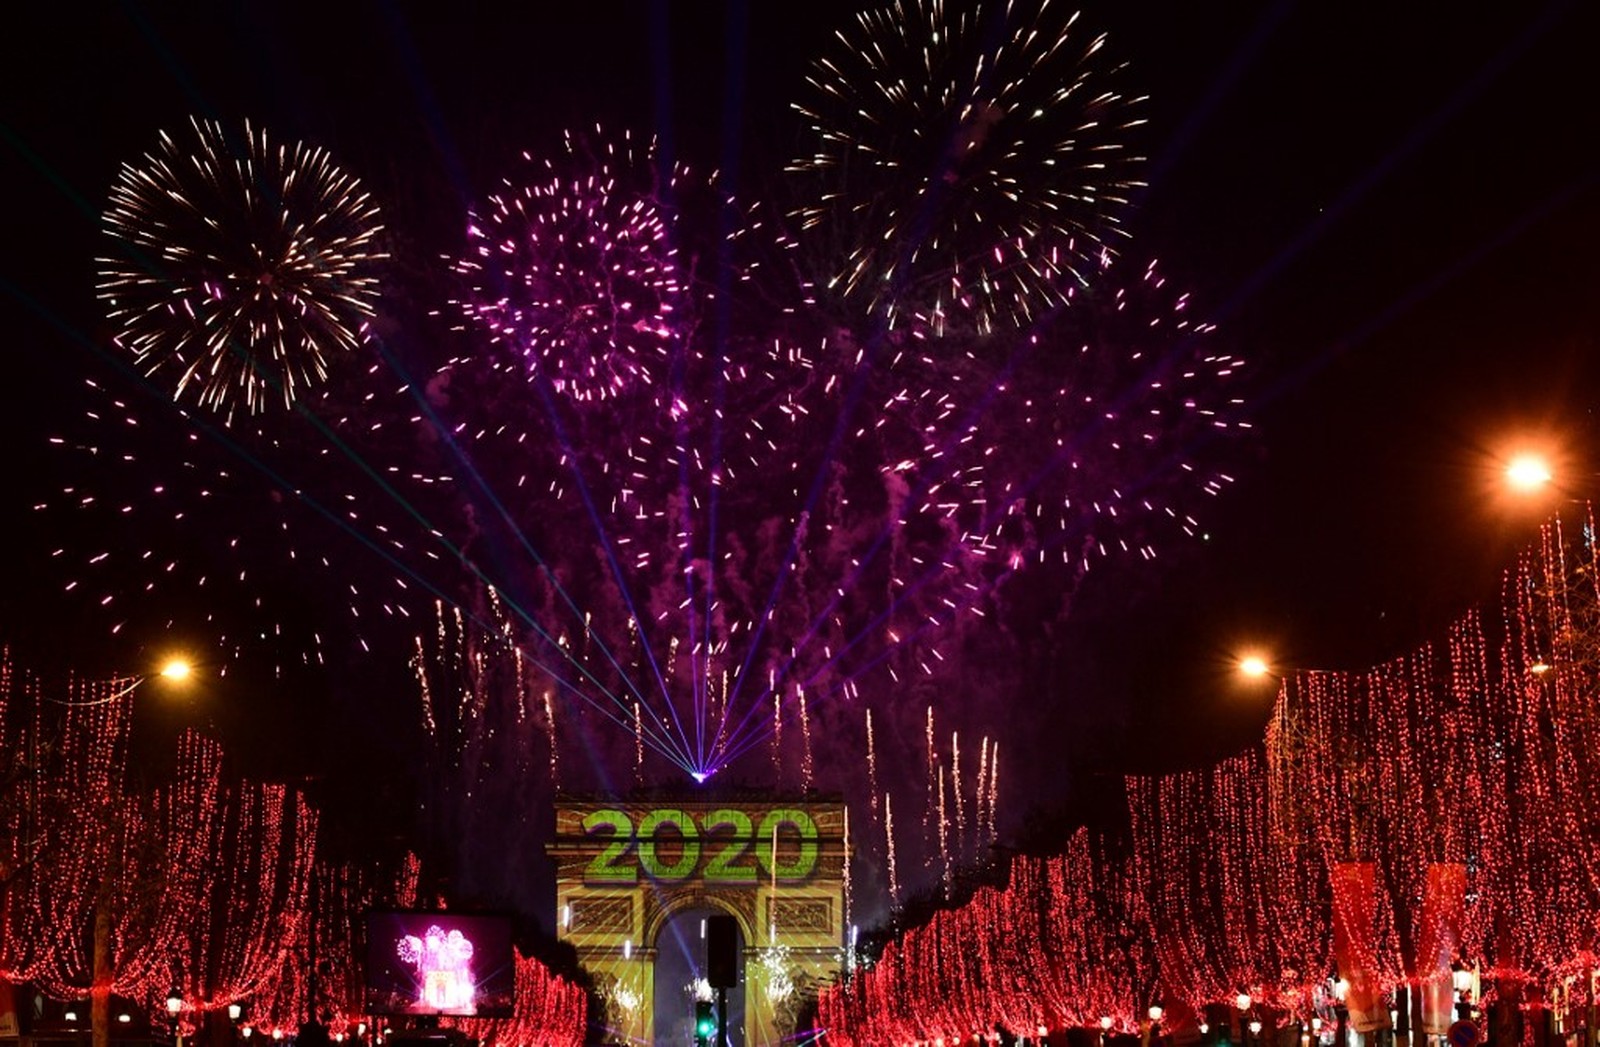  Fogos de artifício iluminam o céu sobre o Arco do Triunfo durante as comemorações do Ano Novo na avenida Champs Elysees, em Paris — Foto: Martin Bureau/AFP